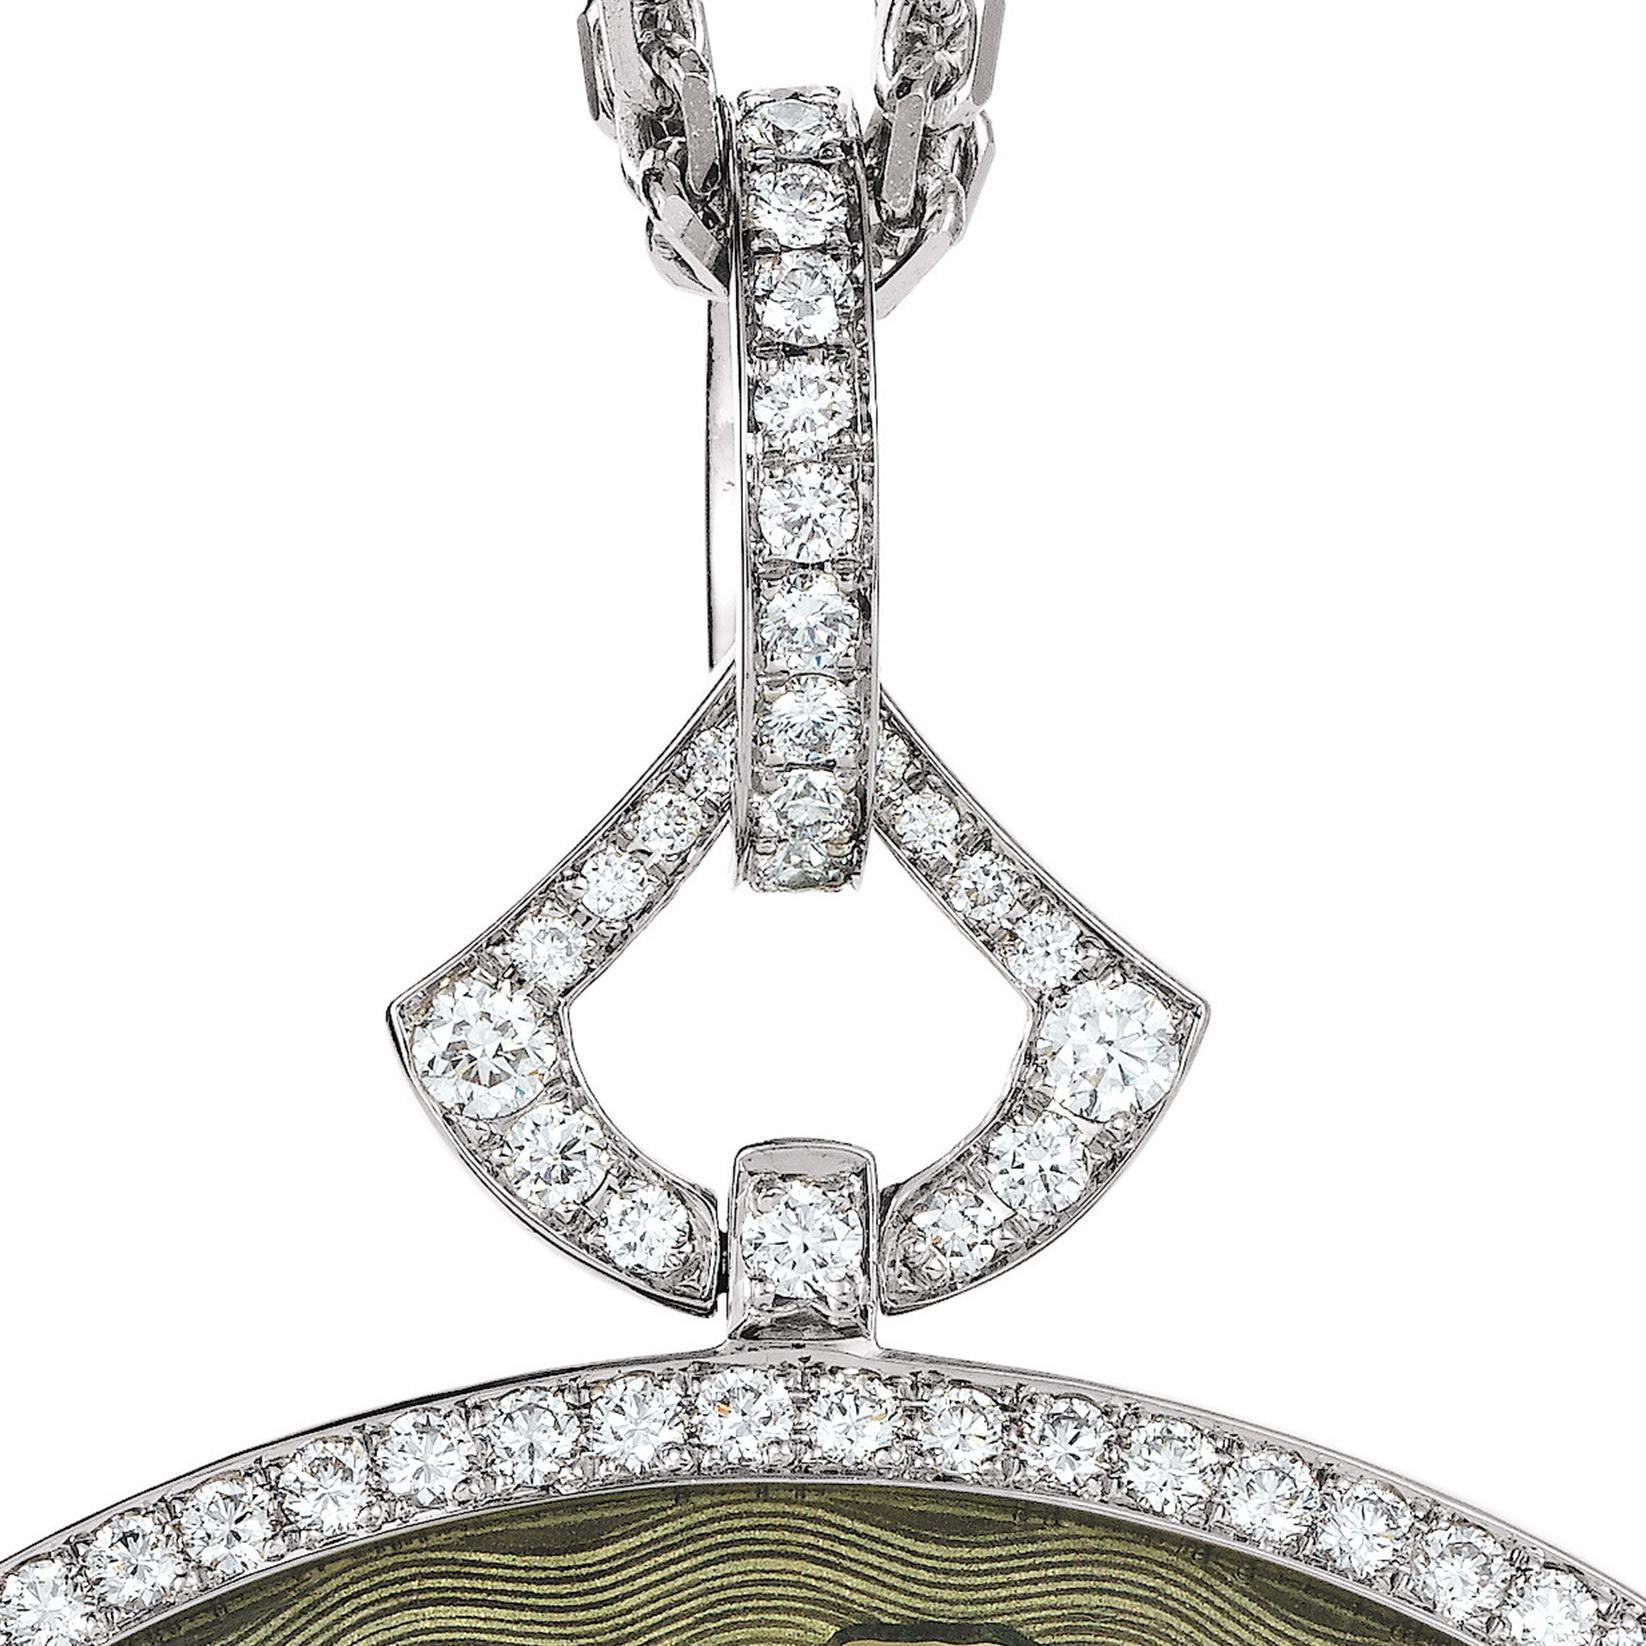 Brilliant Cut Victor Mayer Pendant Necklace 18k White Gold Cloisonné Enamel 109 Diamonds 3 ct For Sale